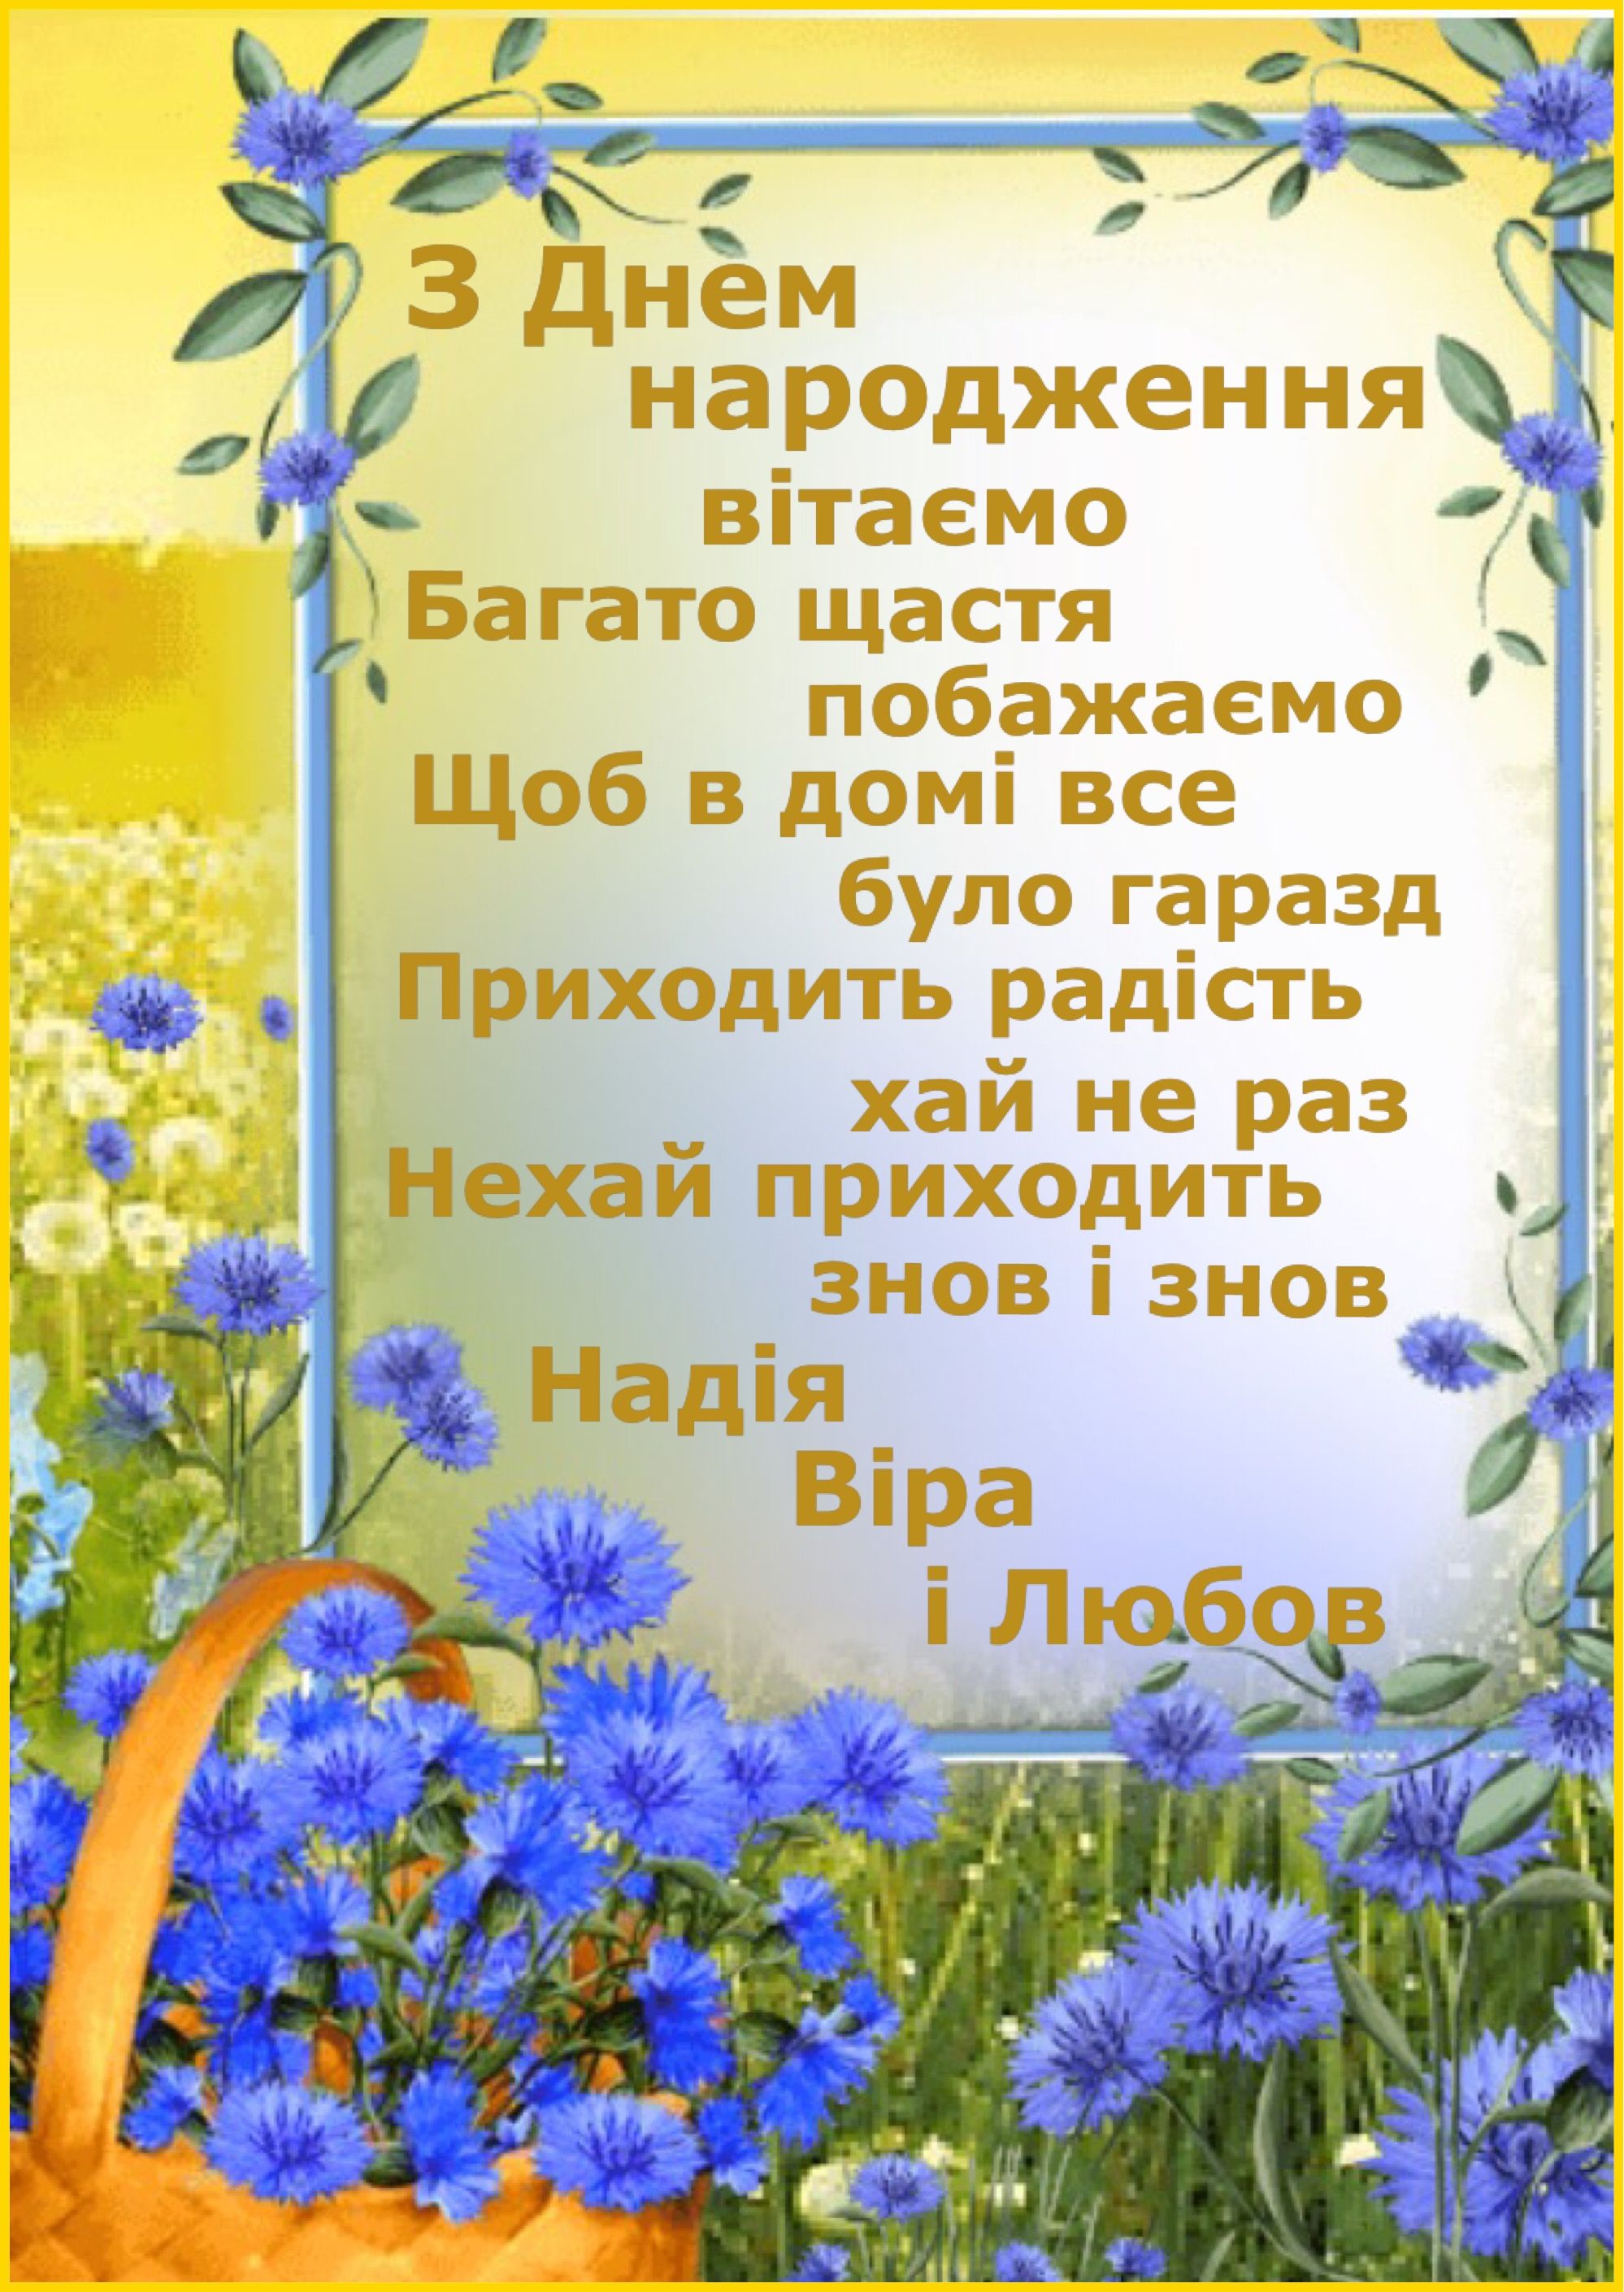 Привітати дівчину з днем народження українською мовою
